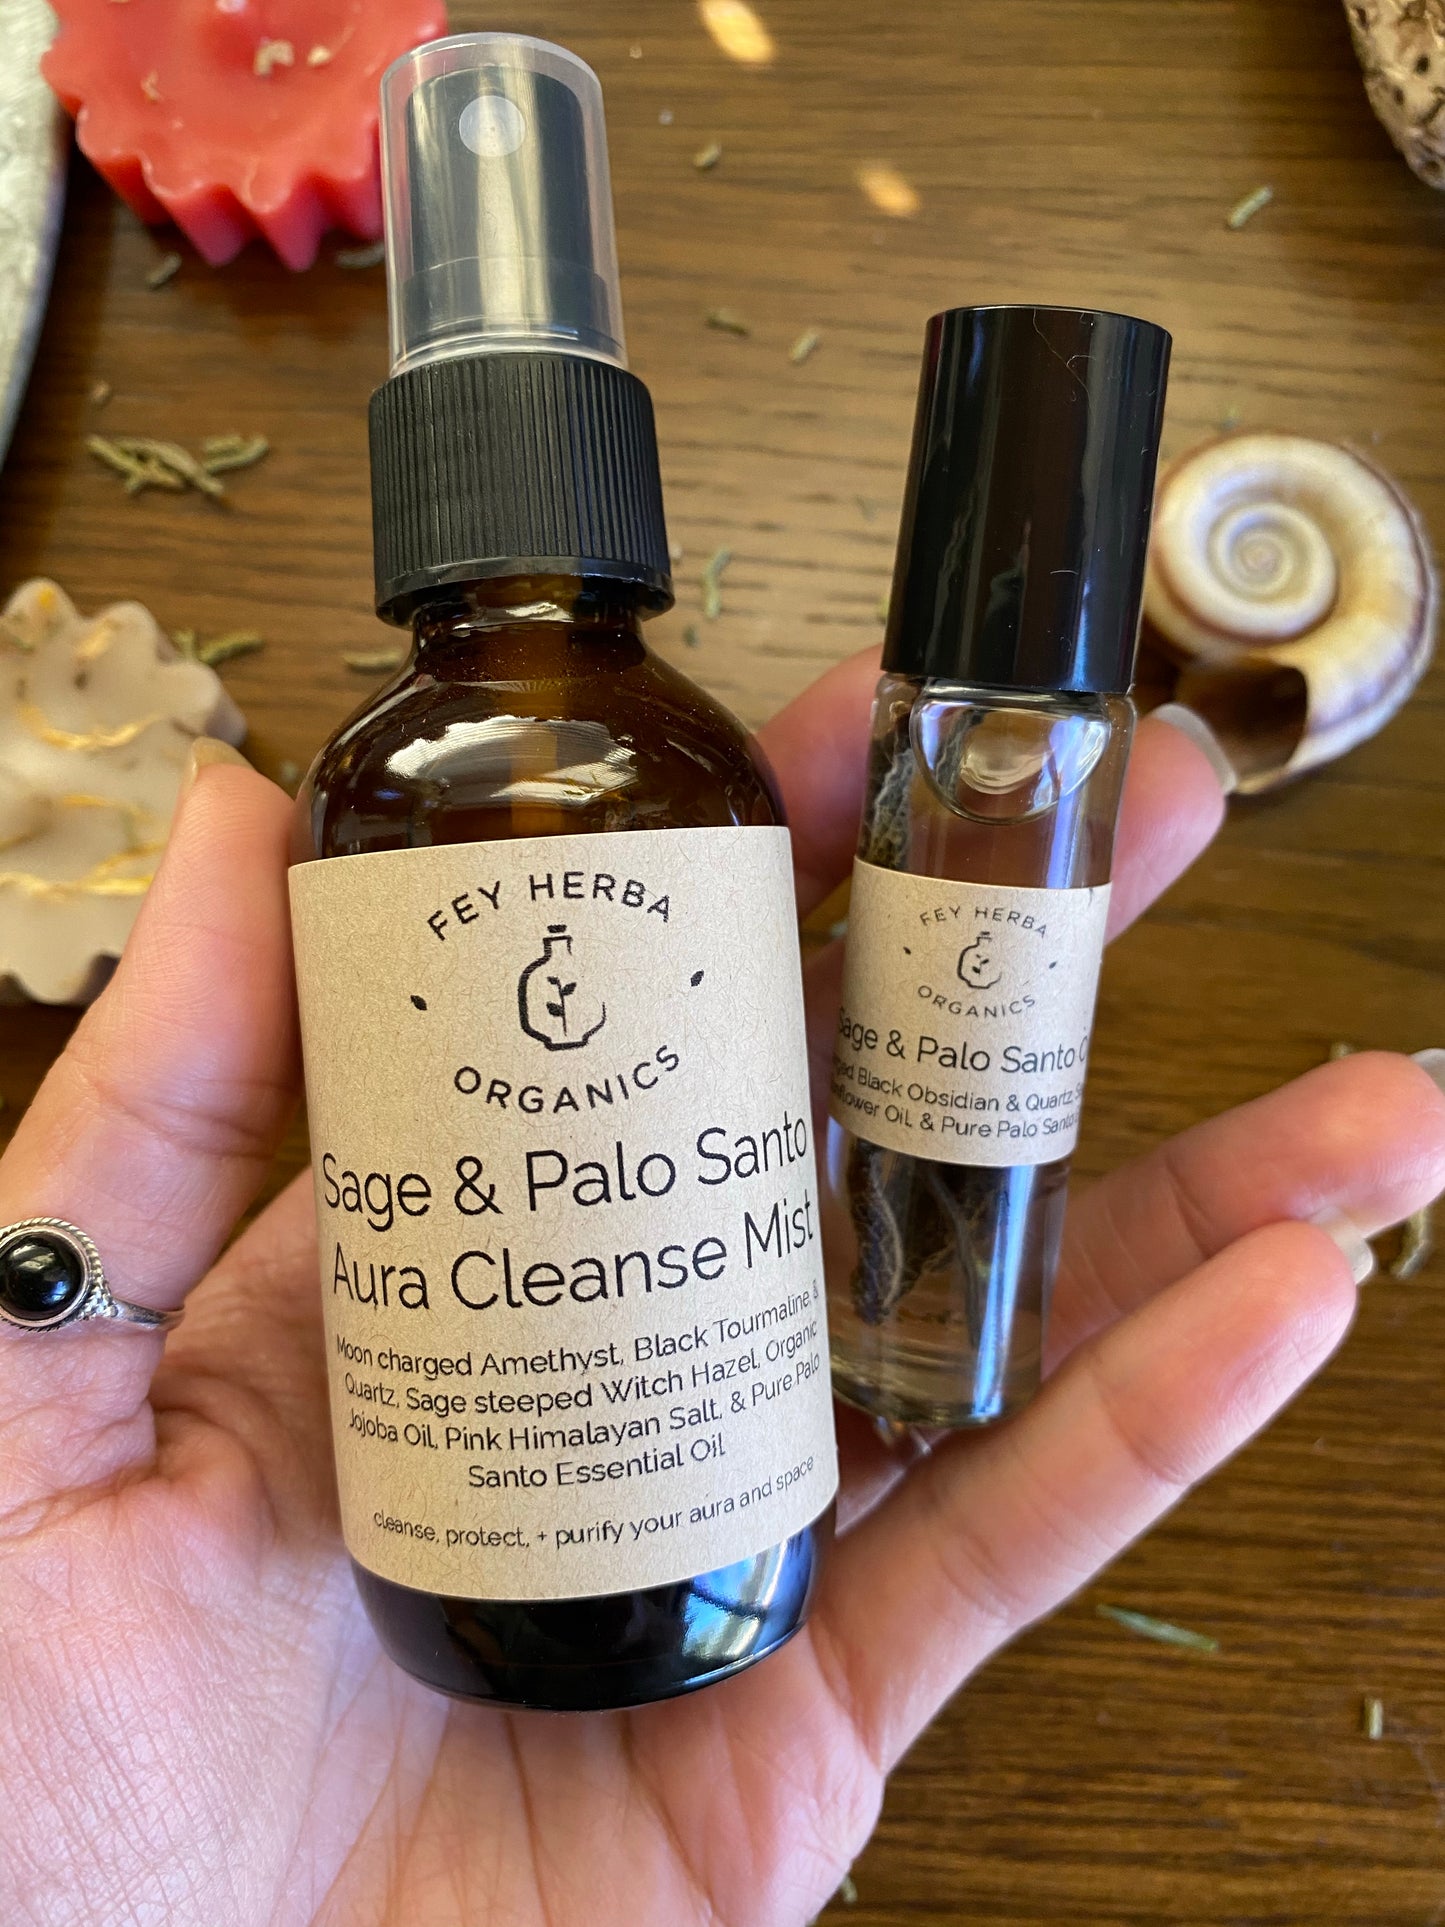 Sage + Palo Santo Oil / Aura Cleanse Mist